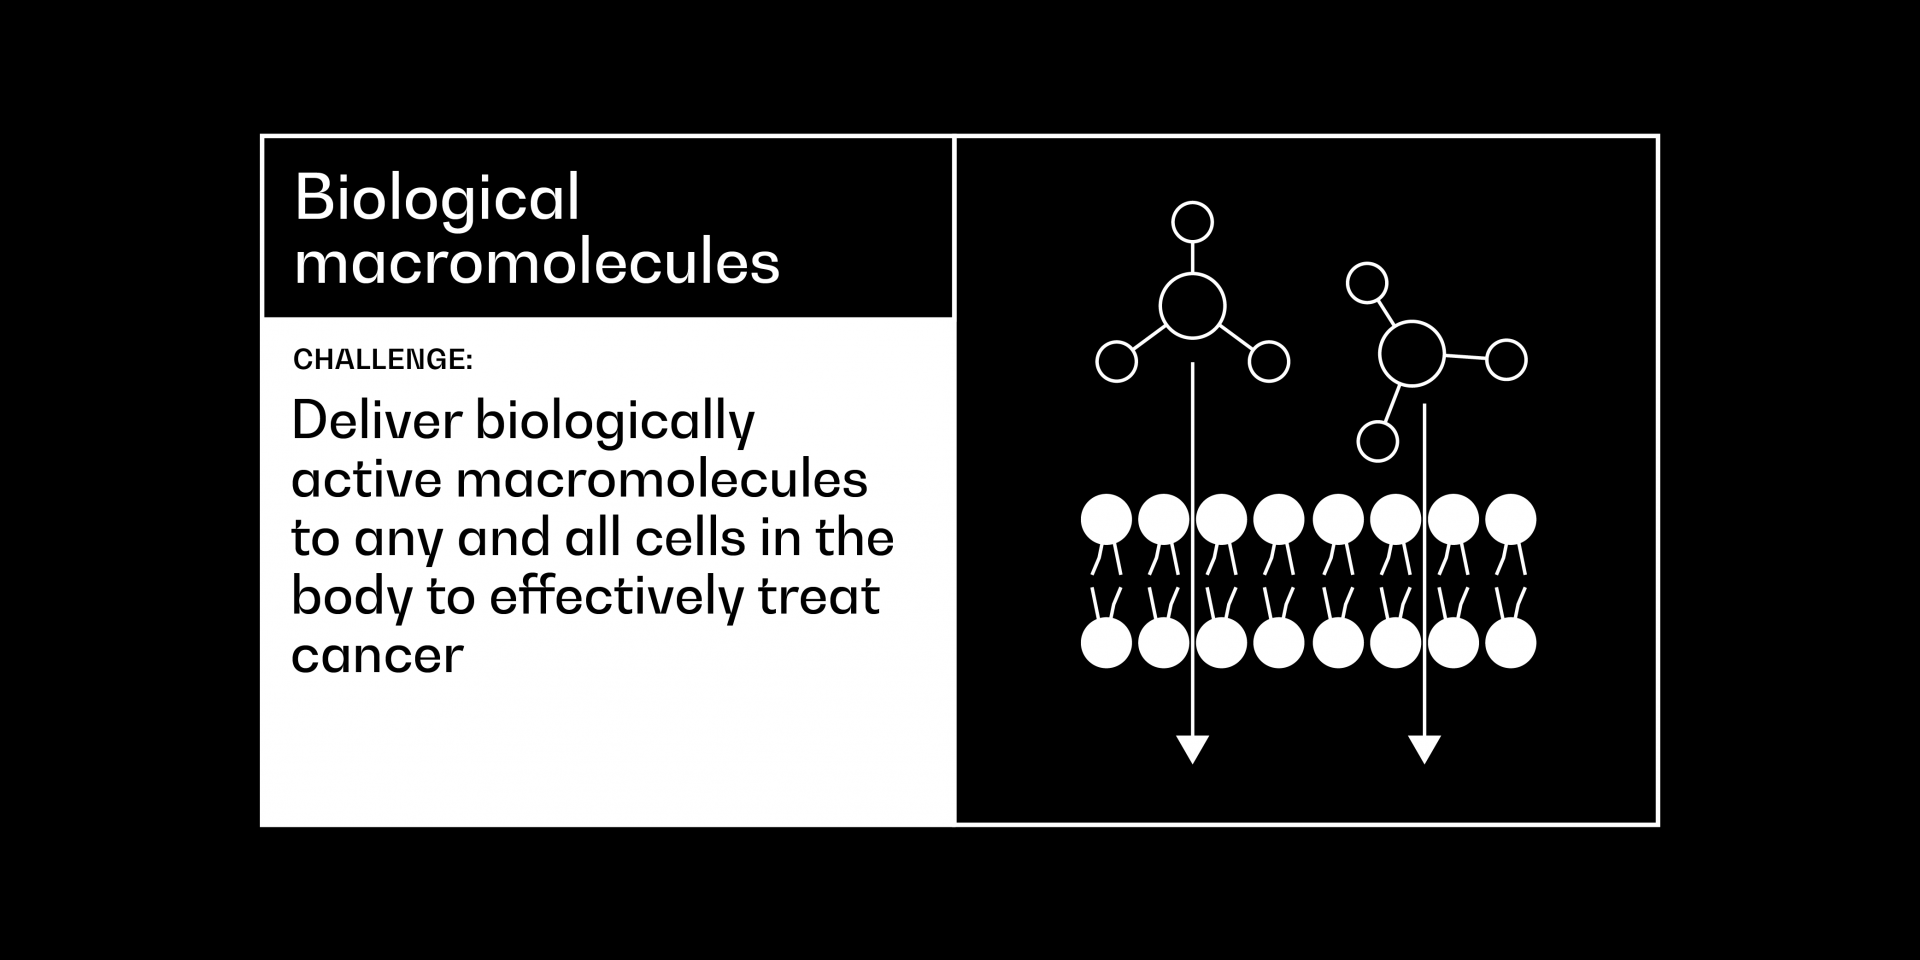 Biological macromolecules cancer grand challenge